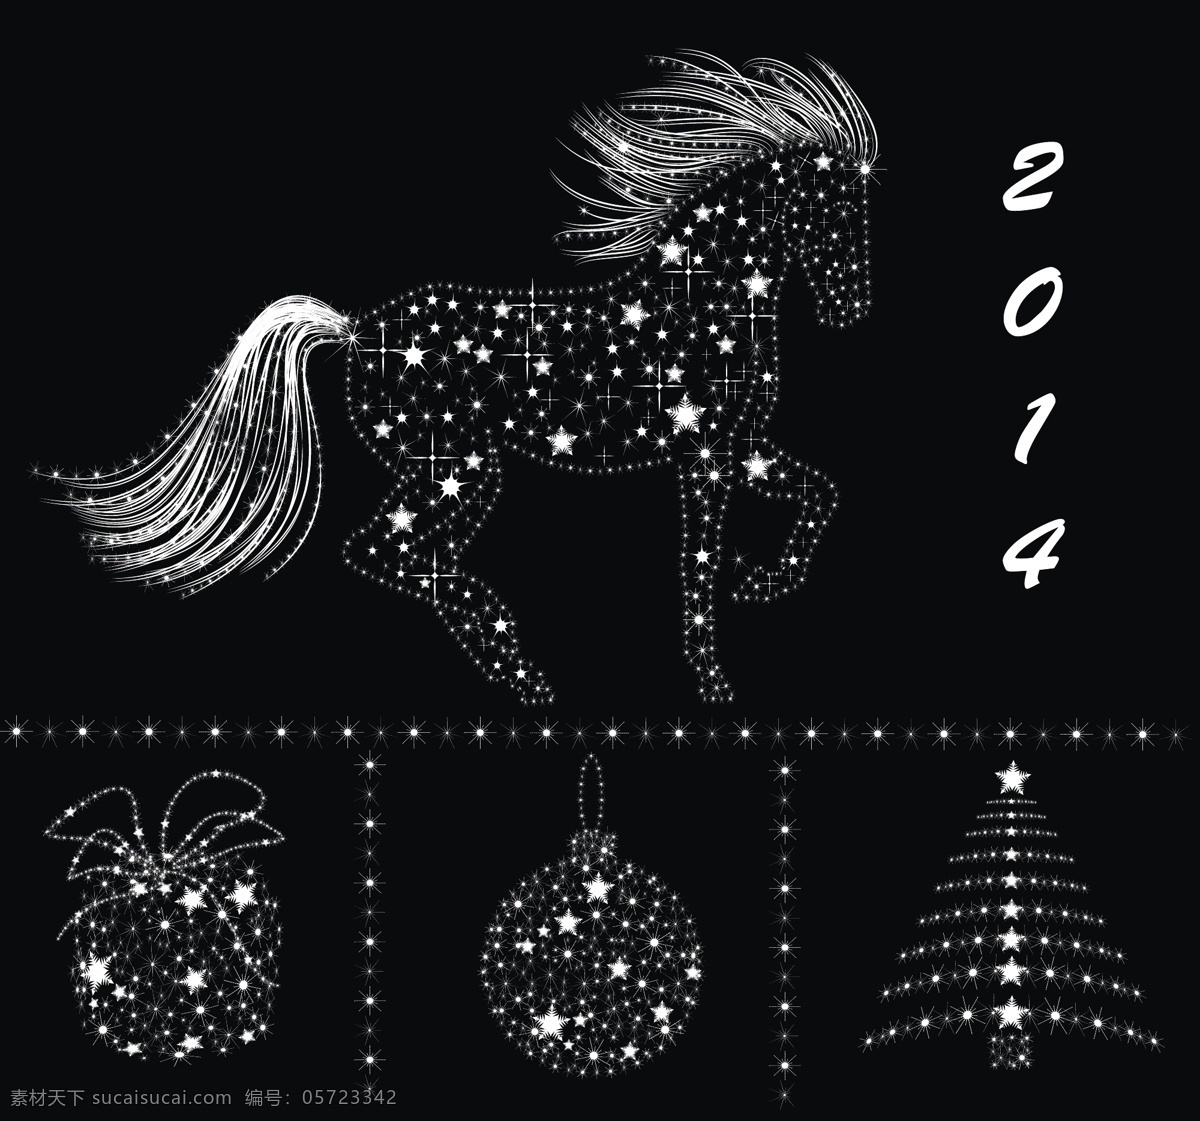 2014 圣诞 星 装饰 元素 矢量图 明星 圣诞节 饰品 图像 矢量节日 节日素材 其他节日